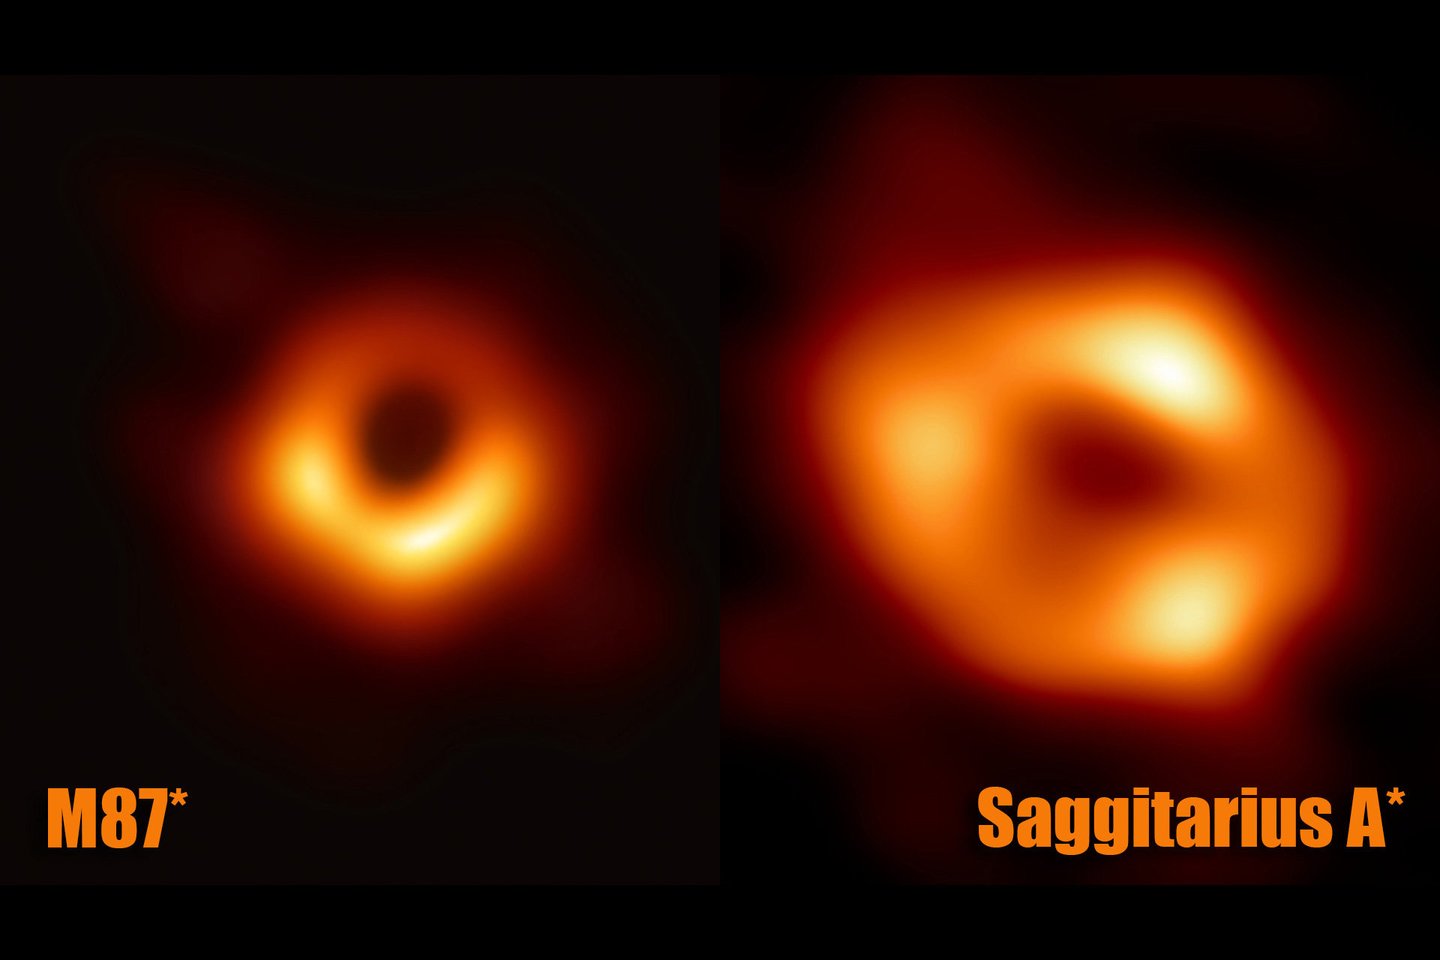  Pirmosios juodųjų skylių nuotraukos pasaulyje: M87* (209 m.) ir Saggitarius A* (2022 m.).<br> ETH nuotr.